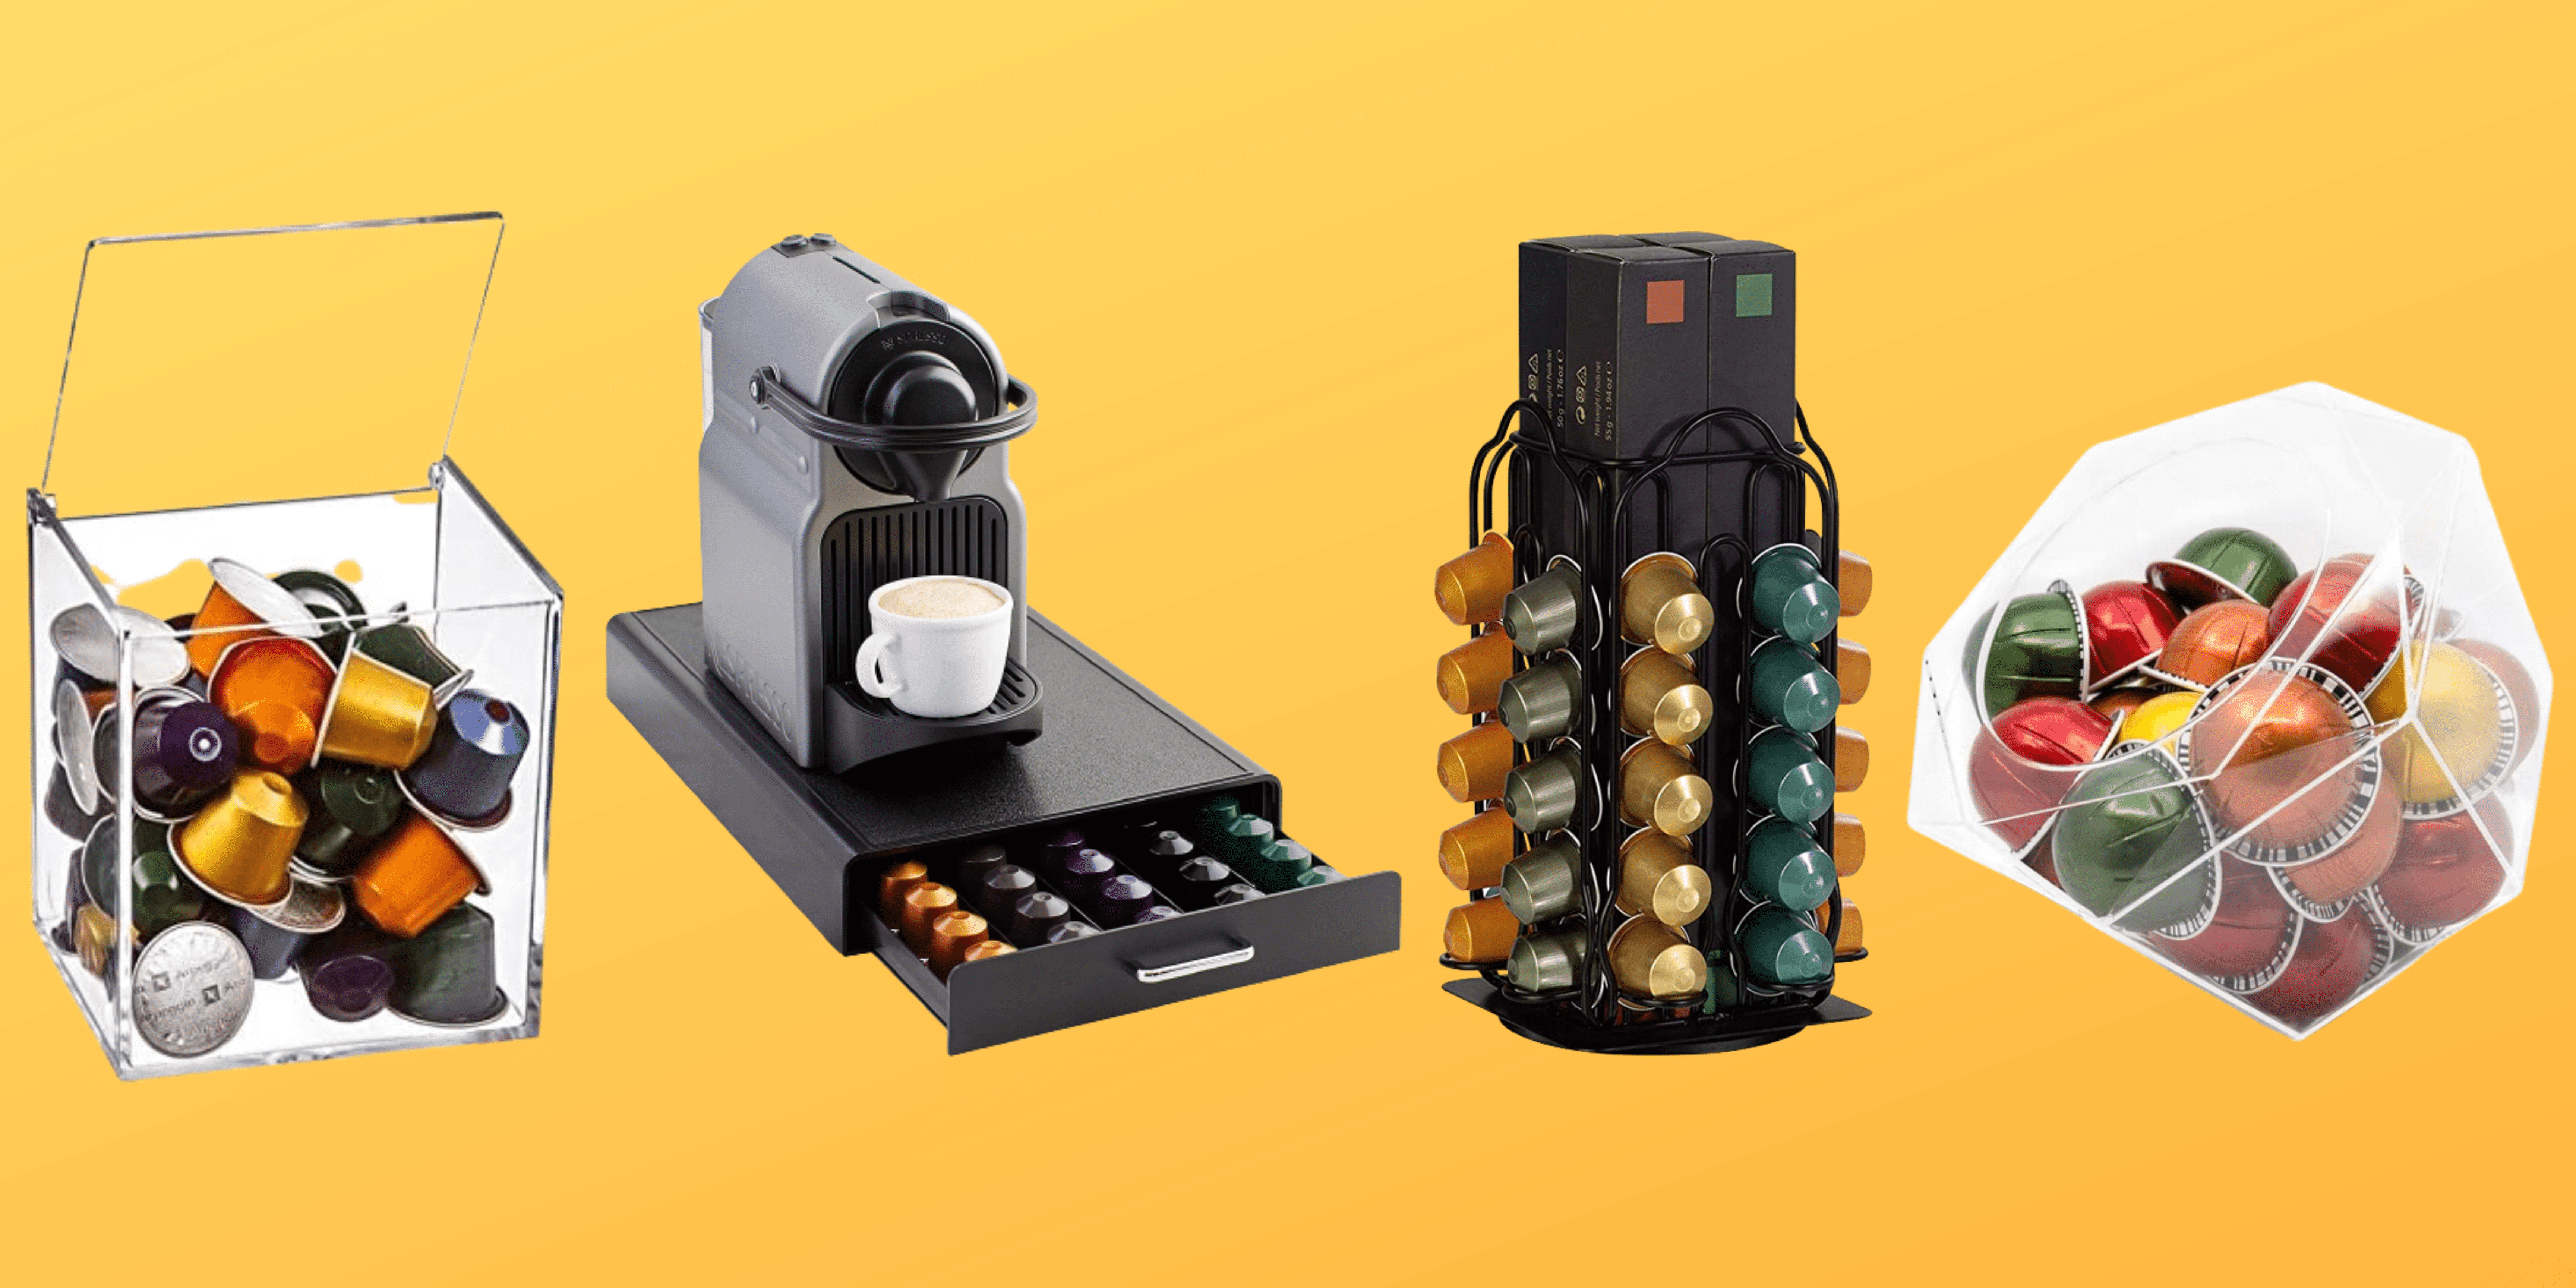 Distributeur Dolce gusto - Tiroir pour ranger les capsules de café